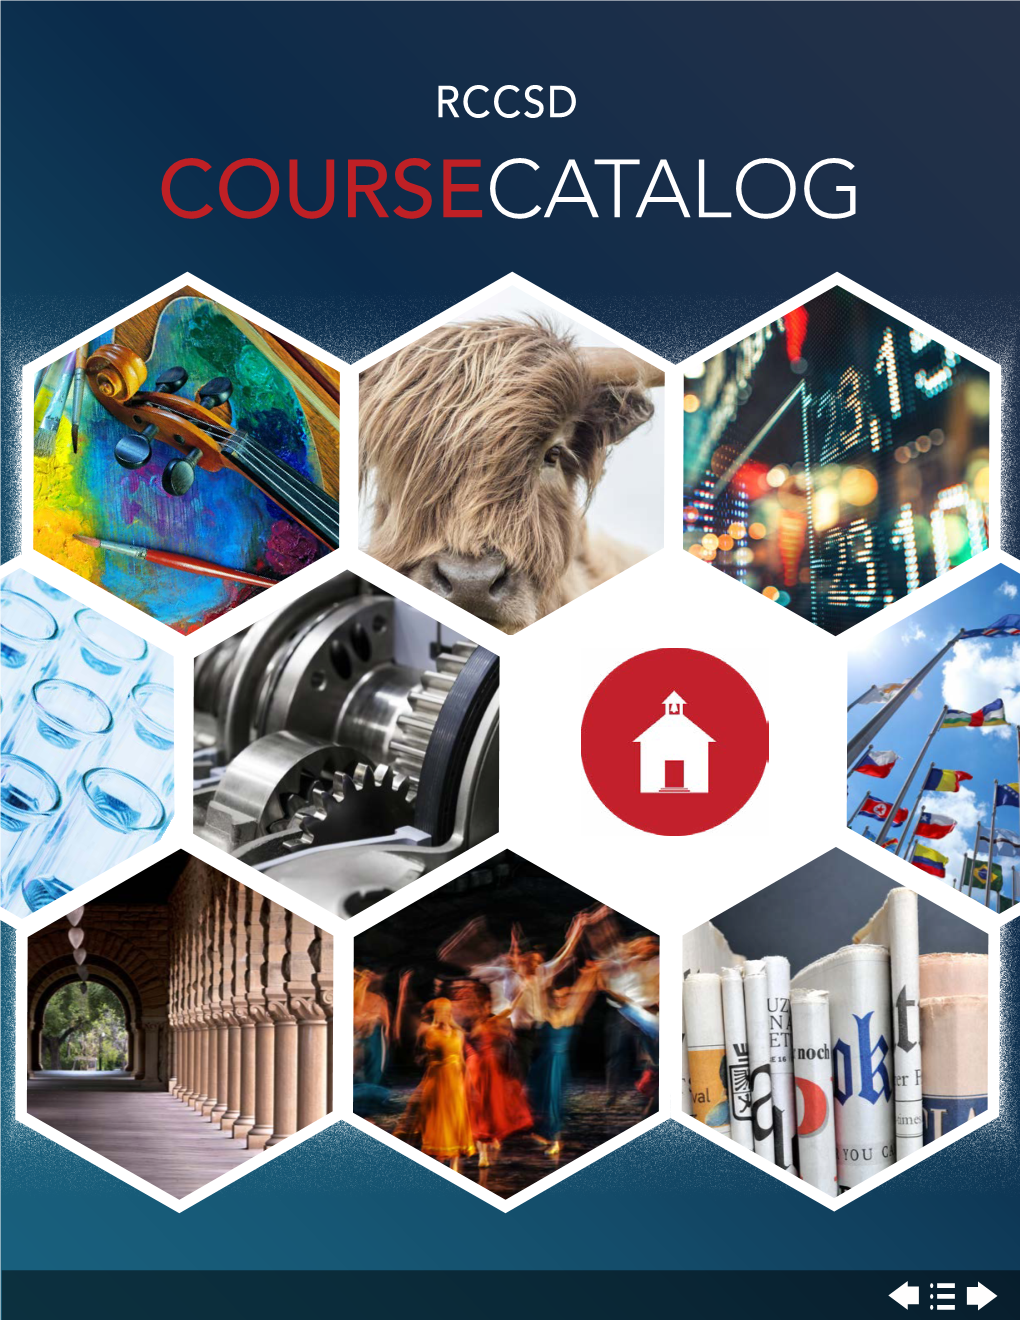 RCCSD Course Interactive Catalog.Pdf